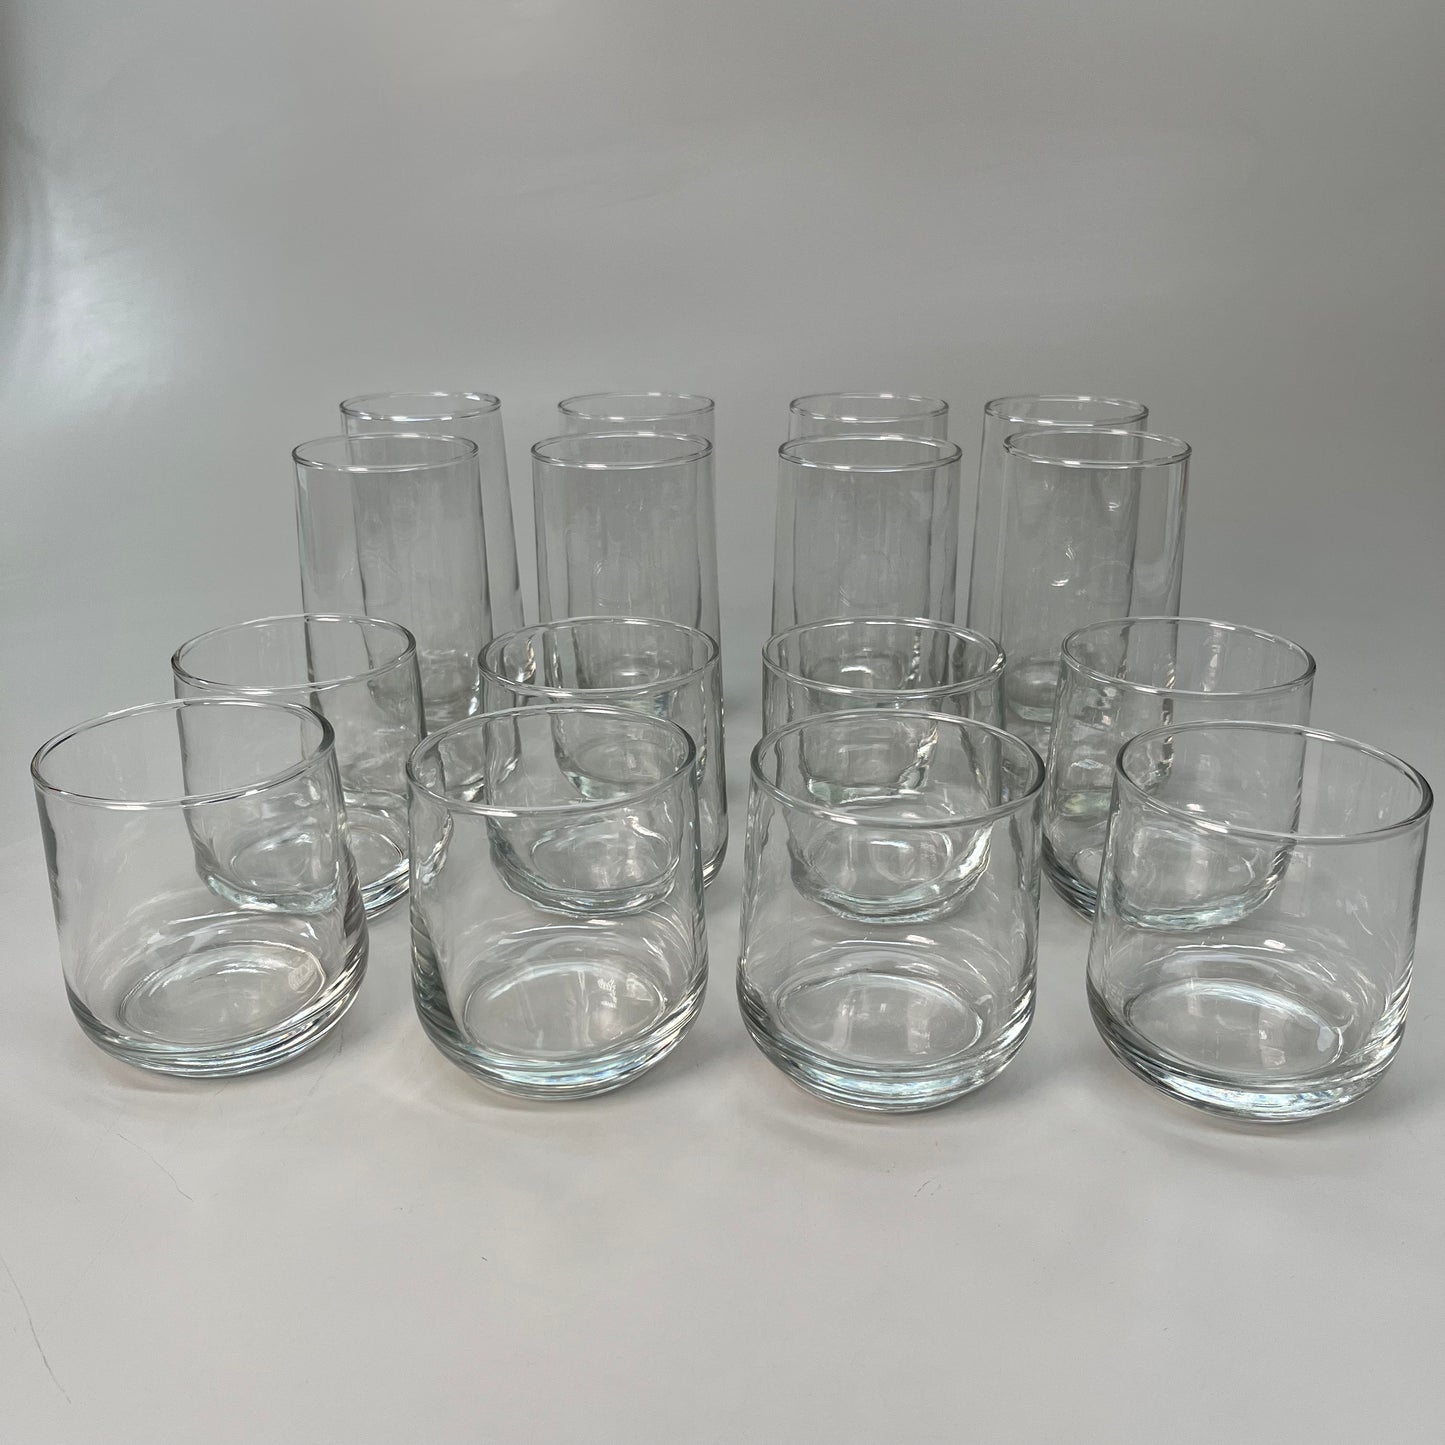 Libbey Mixologist Essentials 2-Piece Measuring Glass Set – Libbey Shop